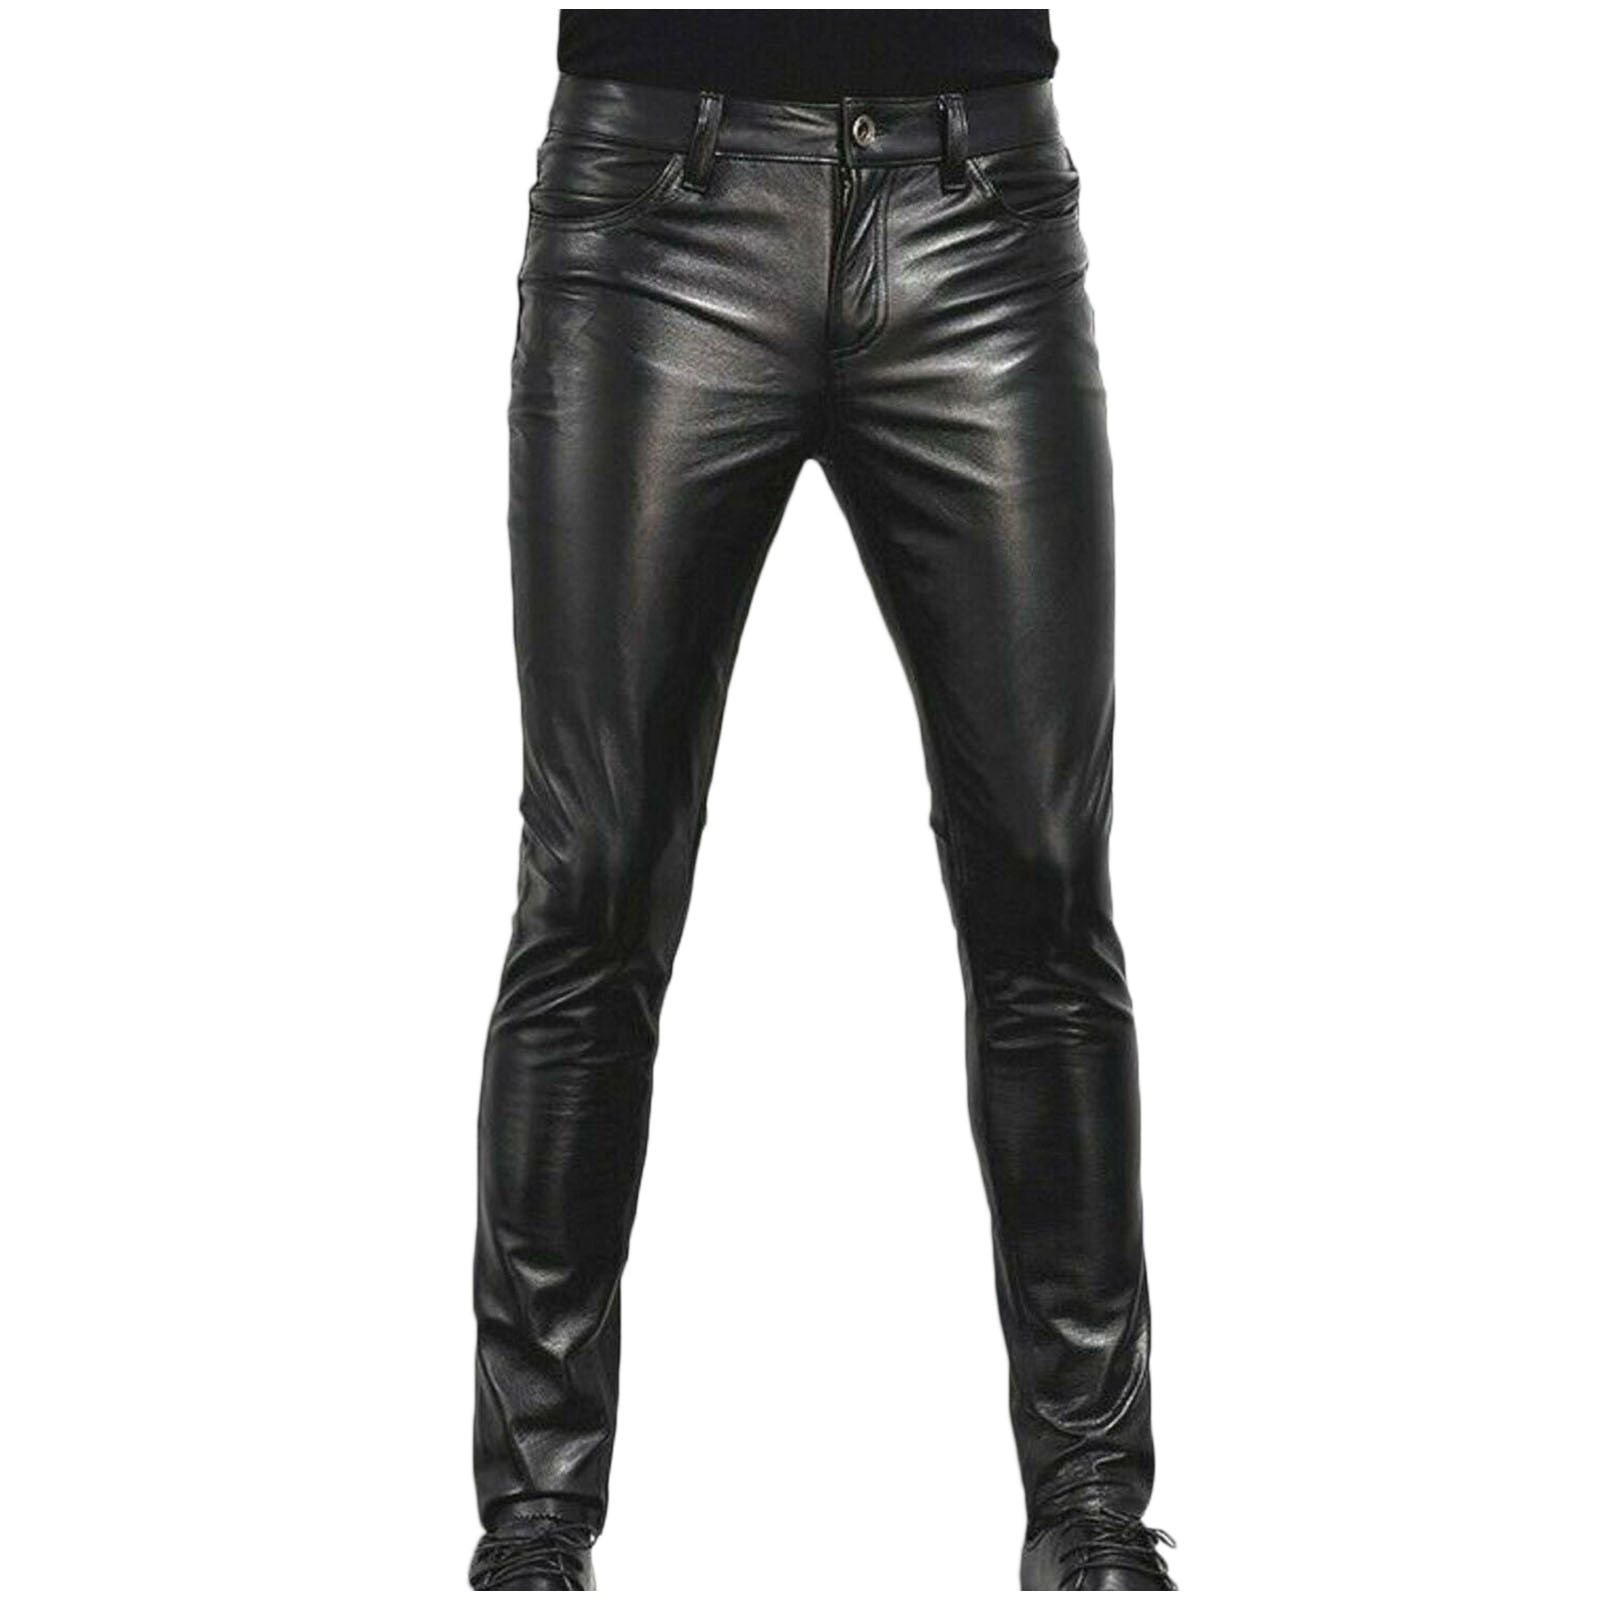 Men Faux Leather Motorcycle Pants Punk Retro Goth Slim FIit Casual Autumn Winter Long Leather Pants for Men Walmart.com